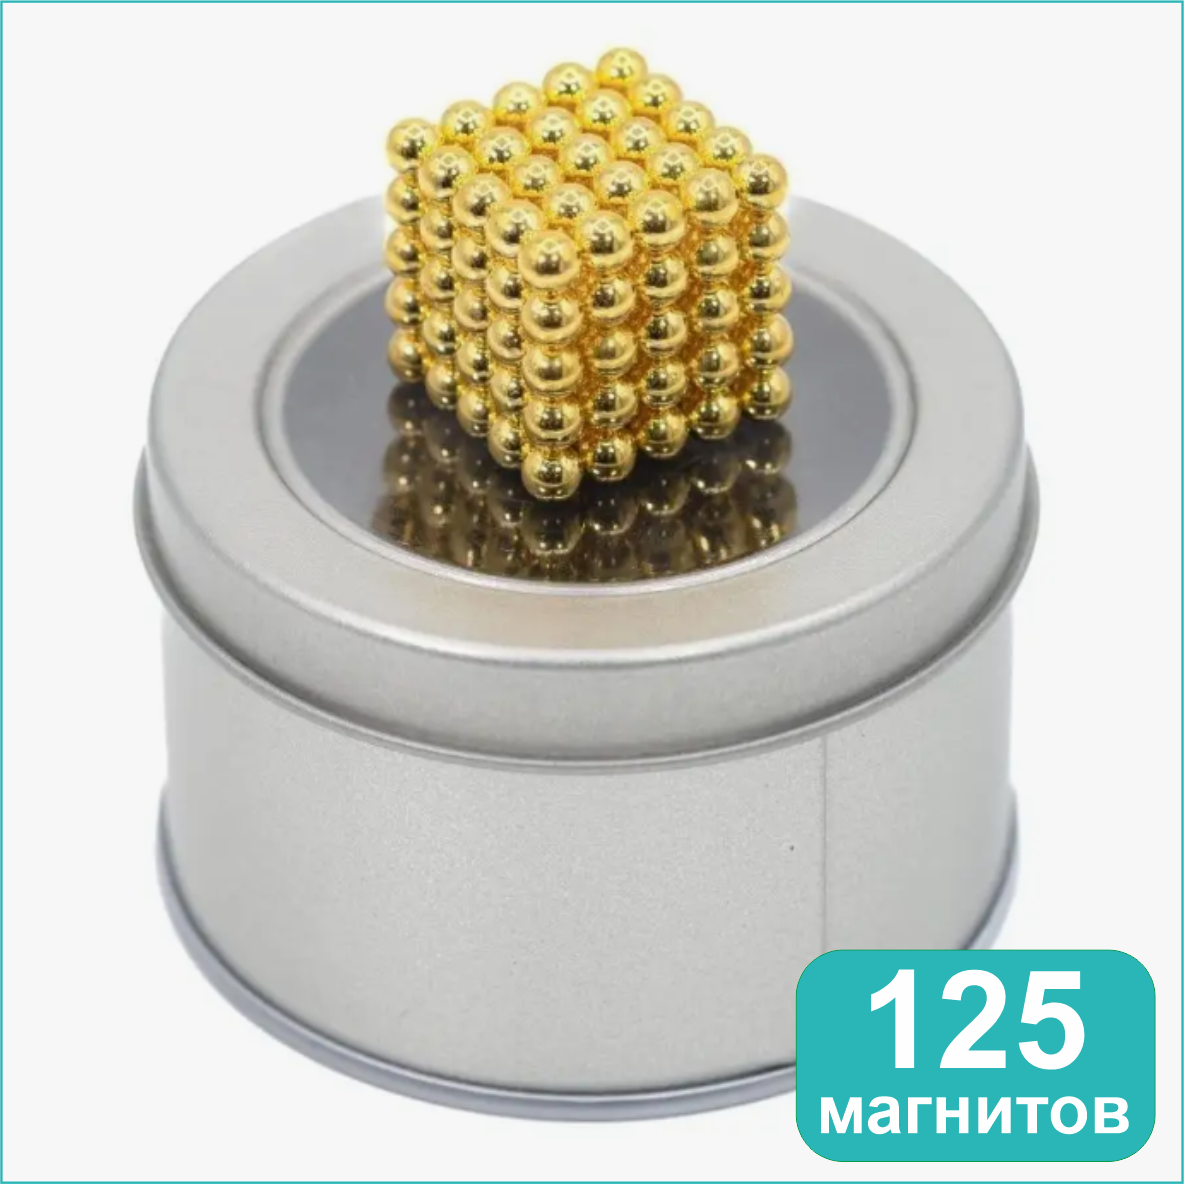 Магнитный конструктор "Неокуб" 125 магнитов (золотой)